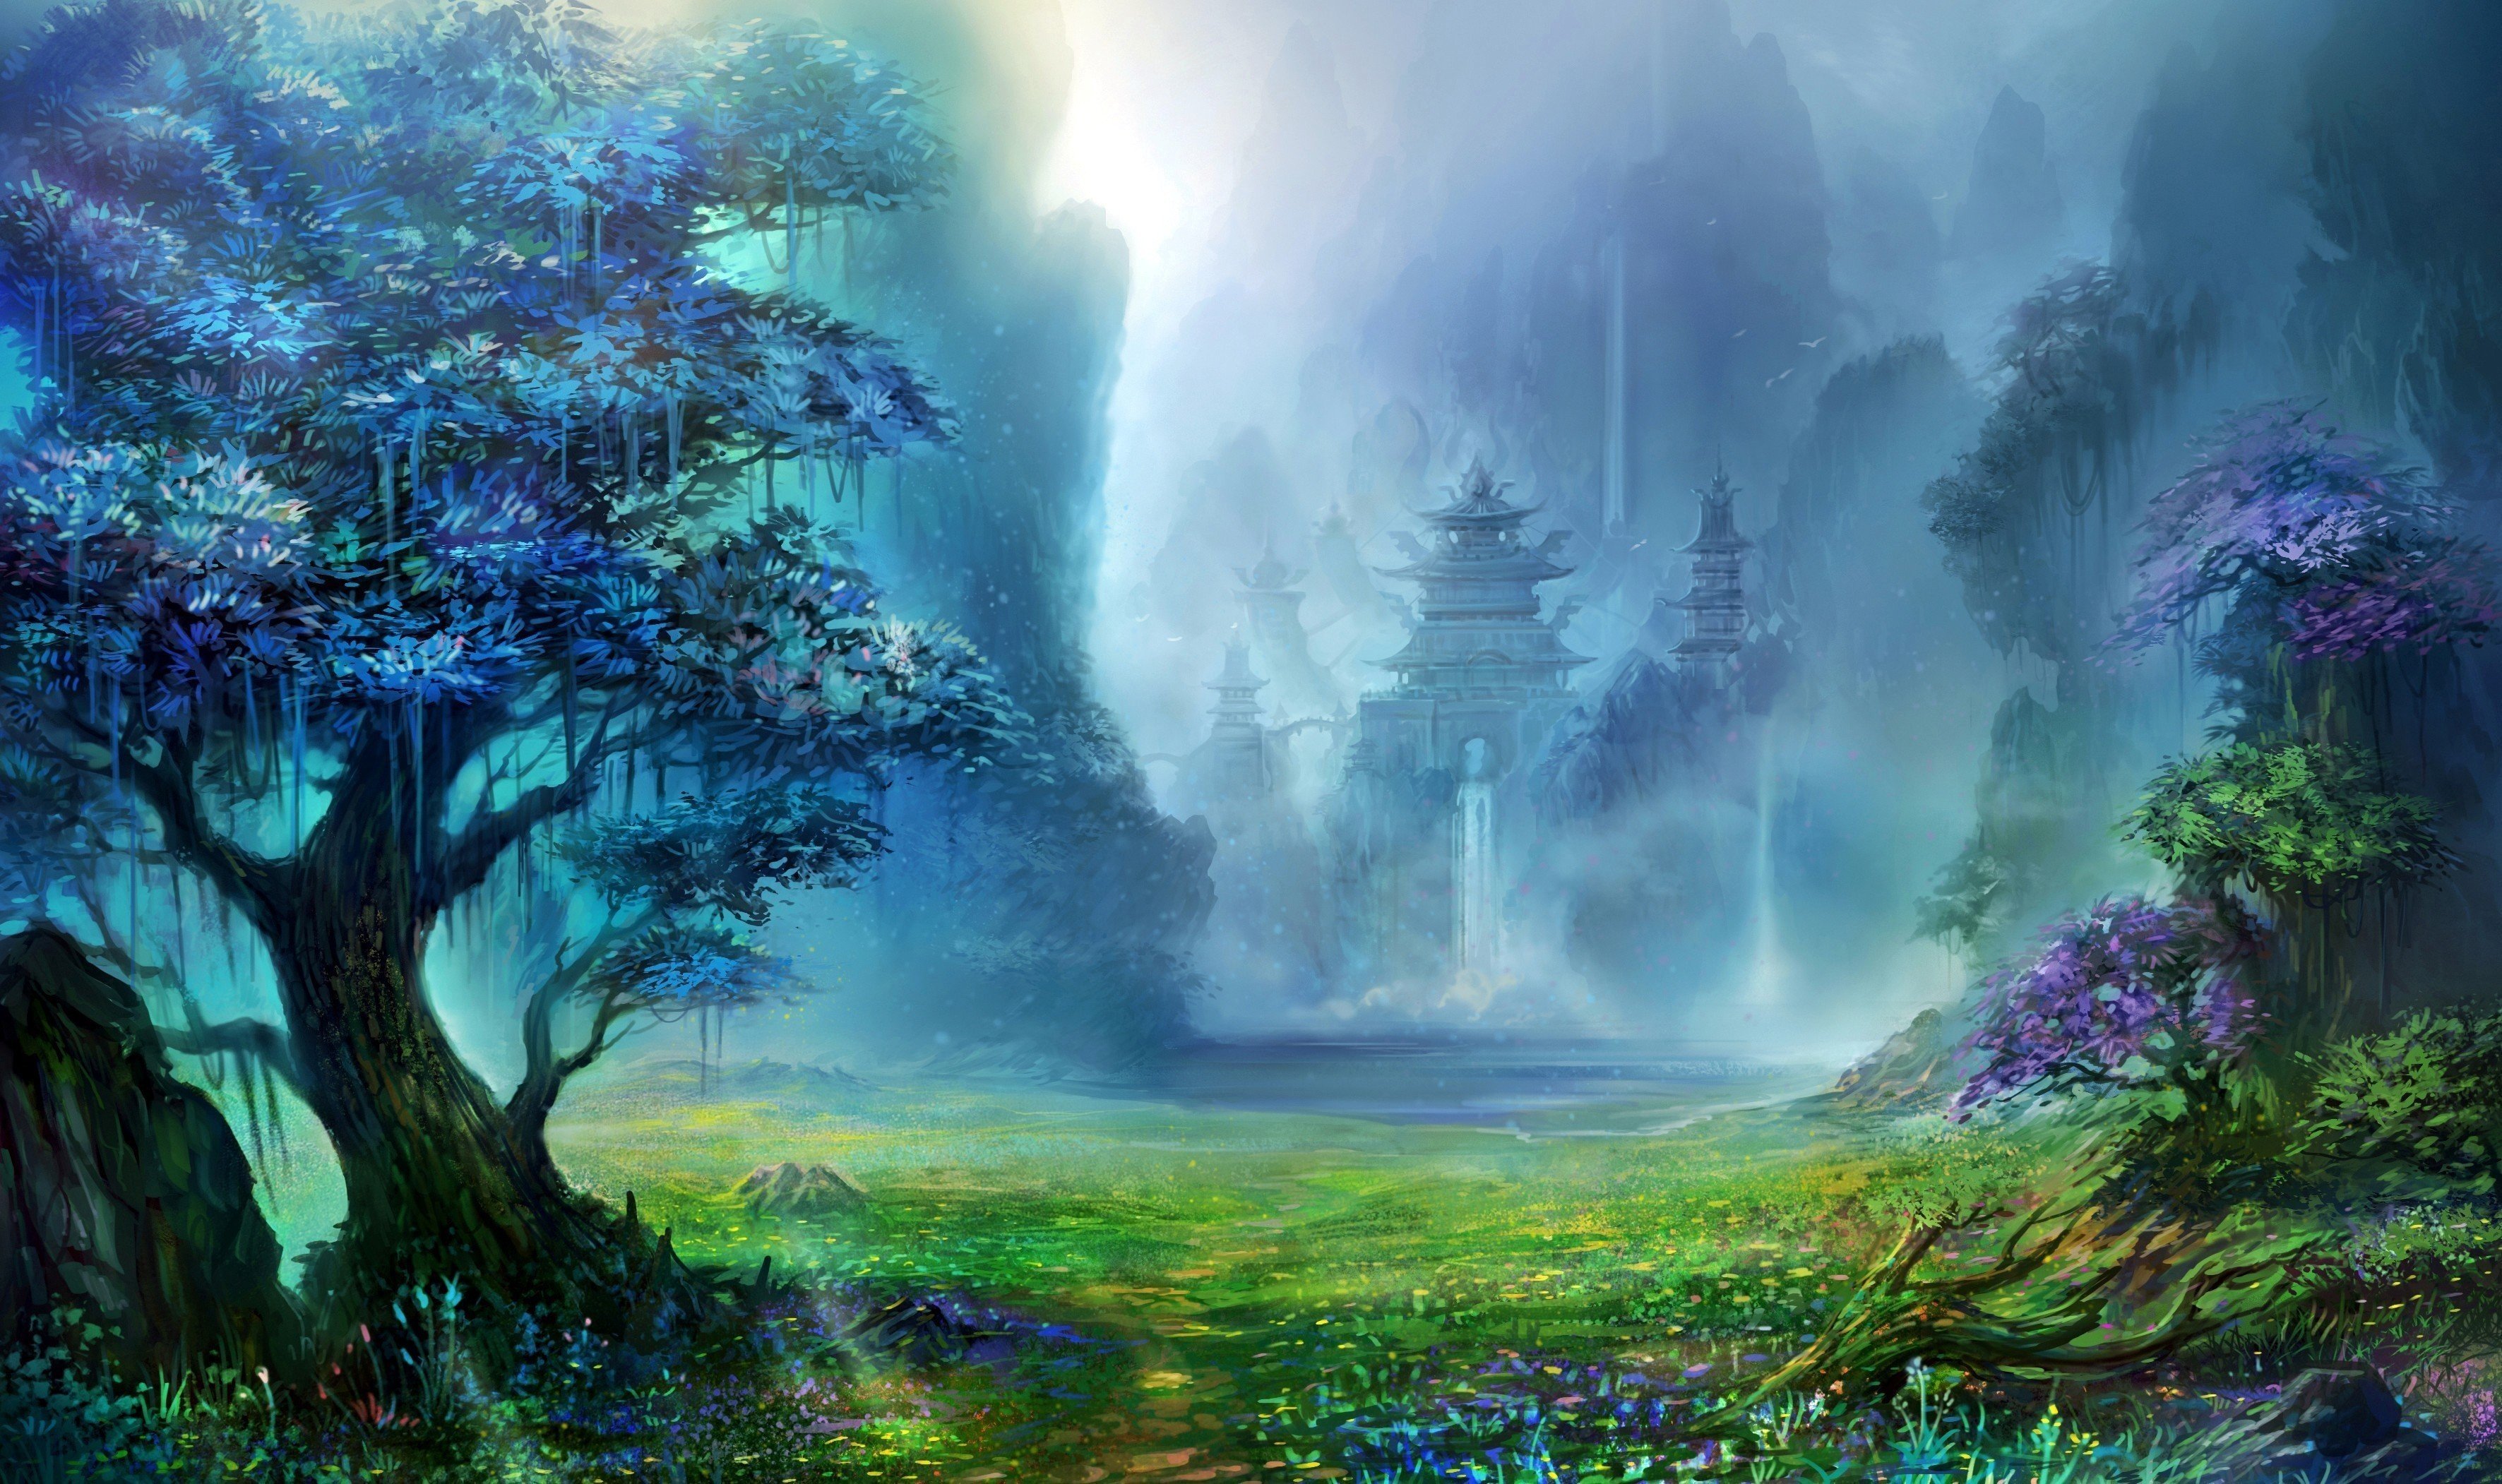 HD fantasy landscape wallpapers | Peakpx